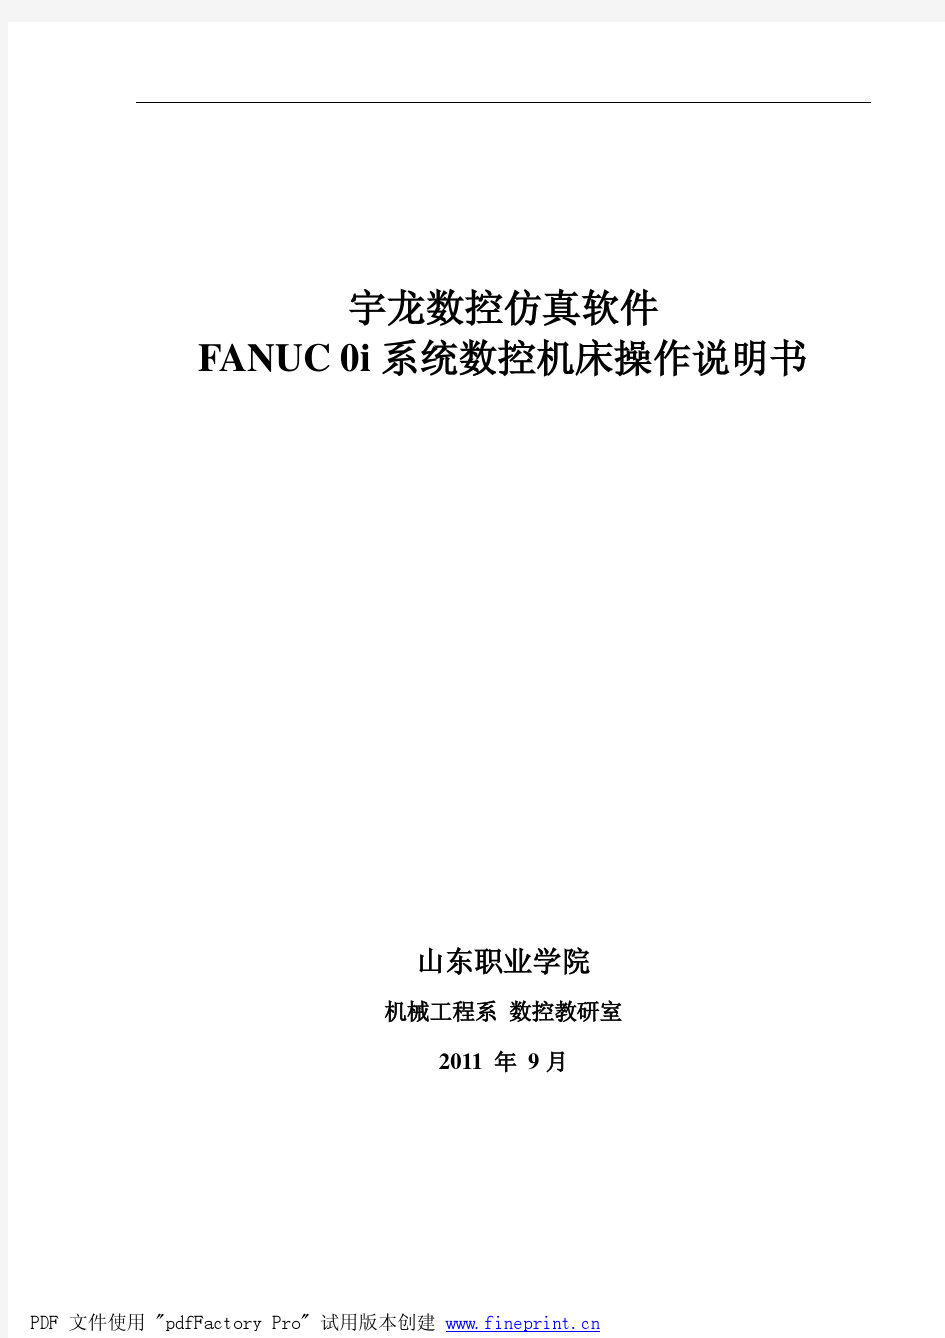 宇龙数控仿真软件FANUC 0i系统数控机床操作说明书